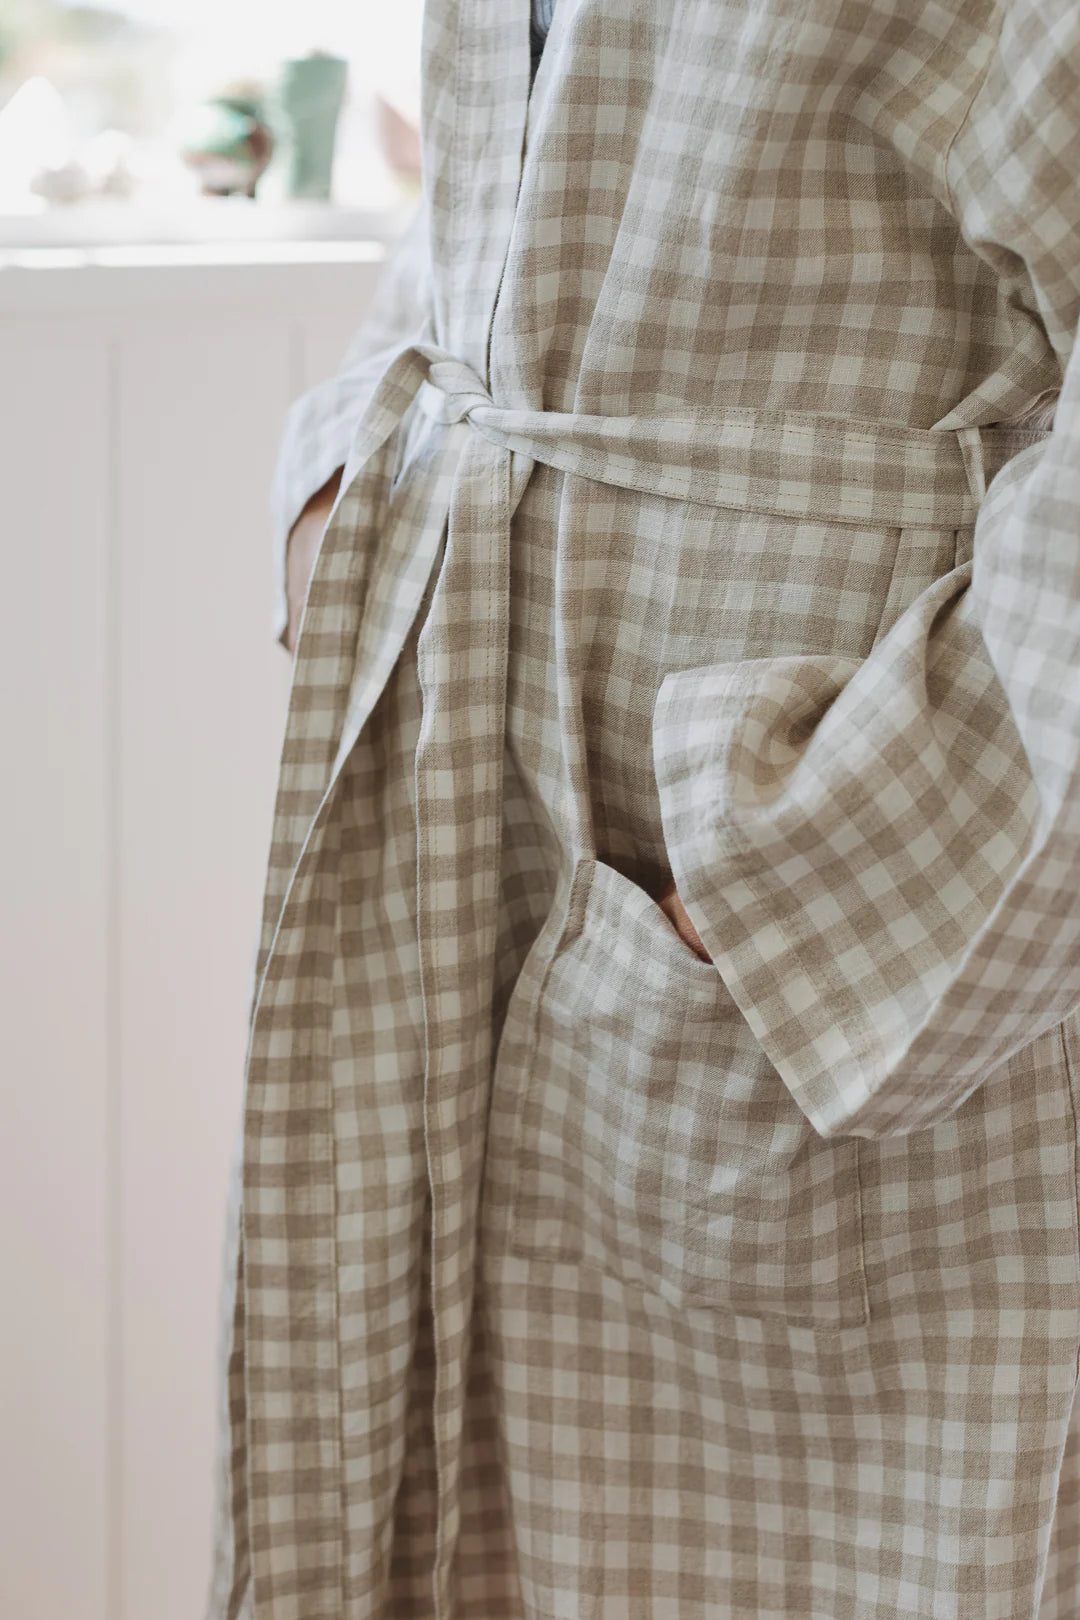 French Linen Robe - Oat Gingham